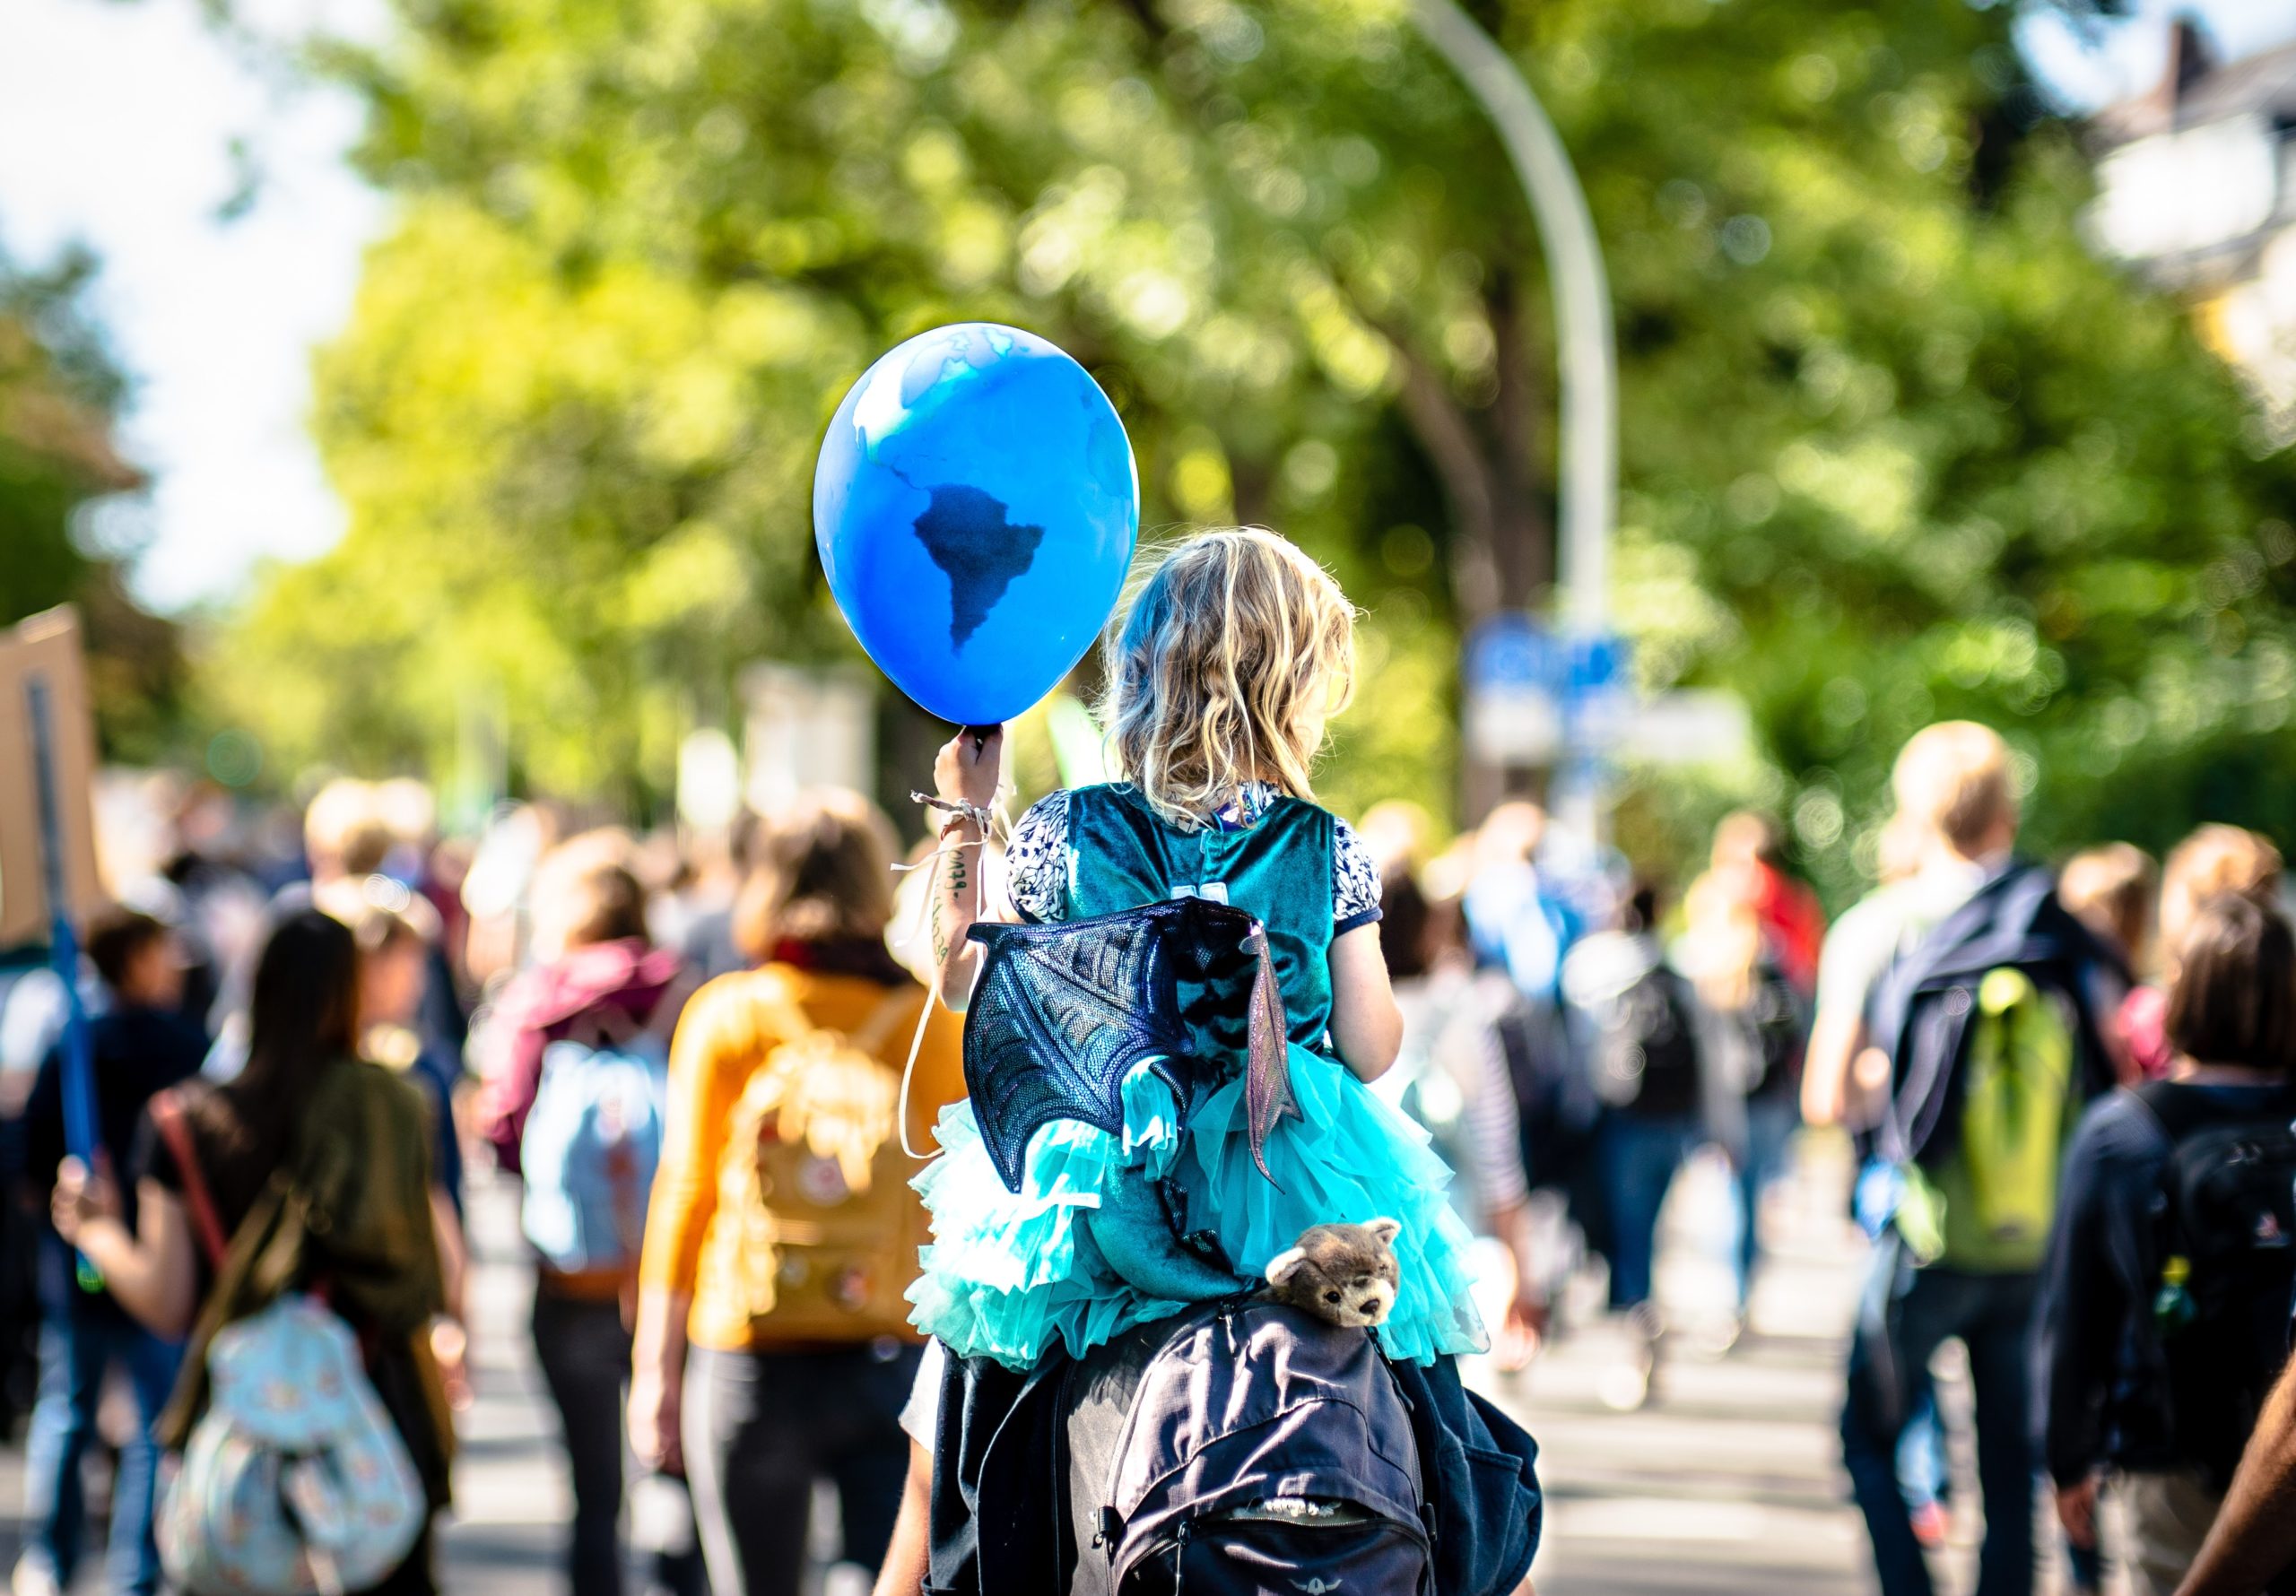 Fotografi: Bildet viser en ung jente som sitter på skuldrene til en voksen person, men en ballong i hånden. I bakgrunnen skimtes et demonstrasjonstog for klimaet.